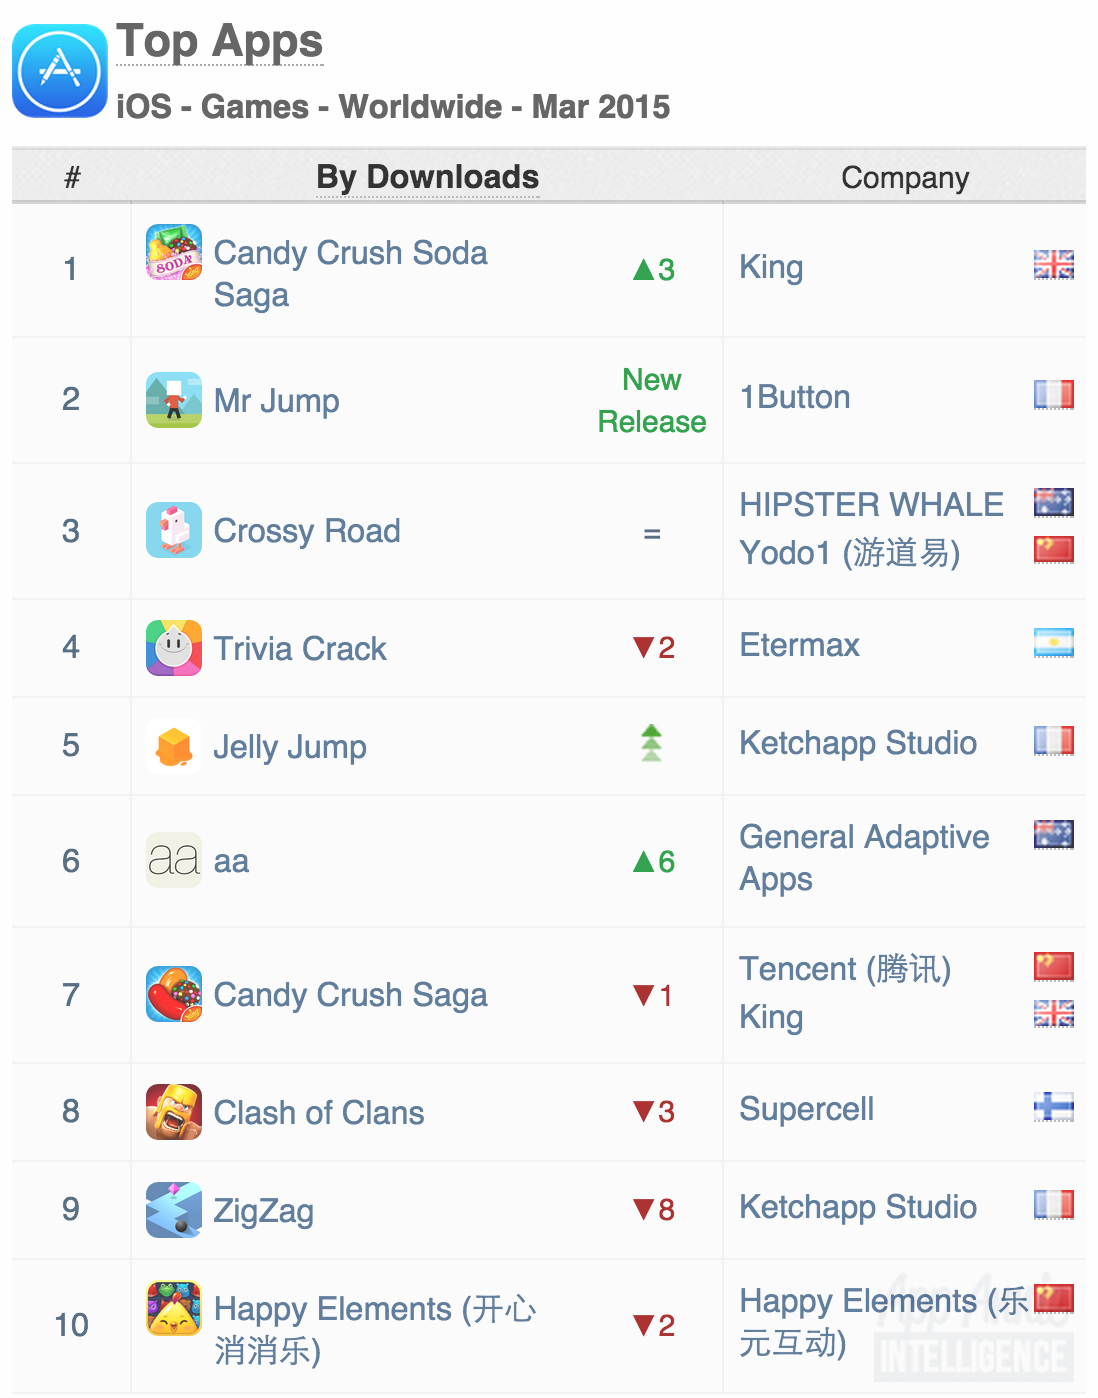 Worldwide App Annie Index ゲーム編 15年3月号